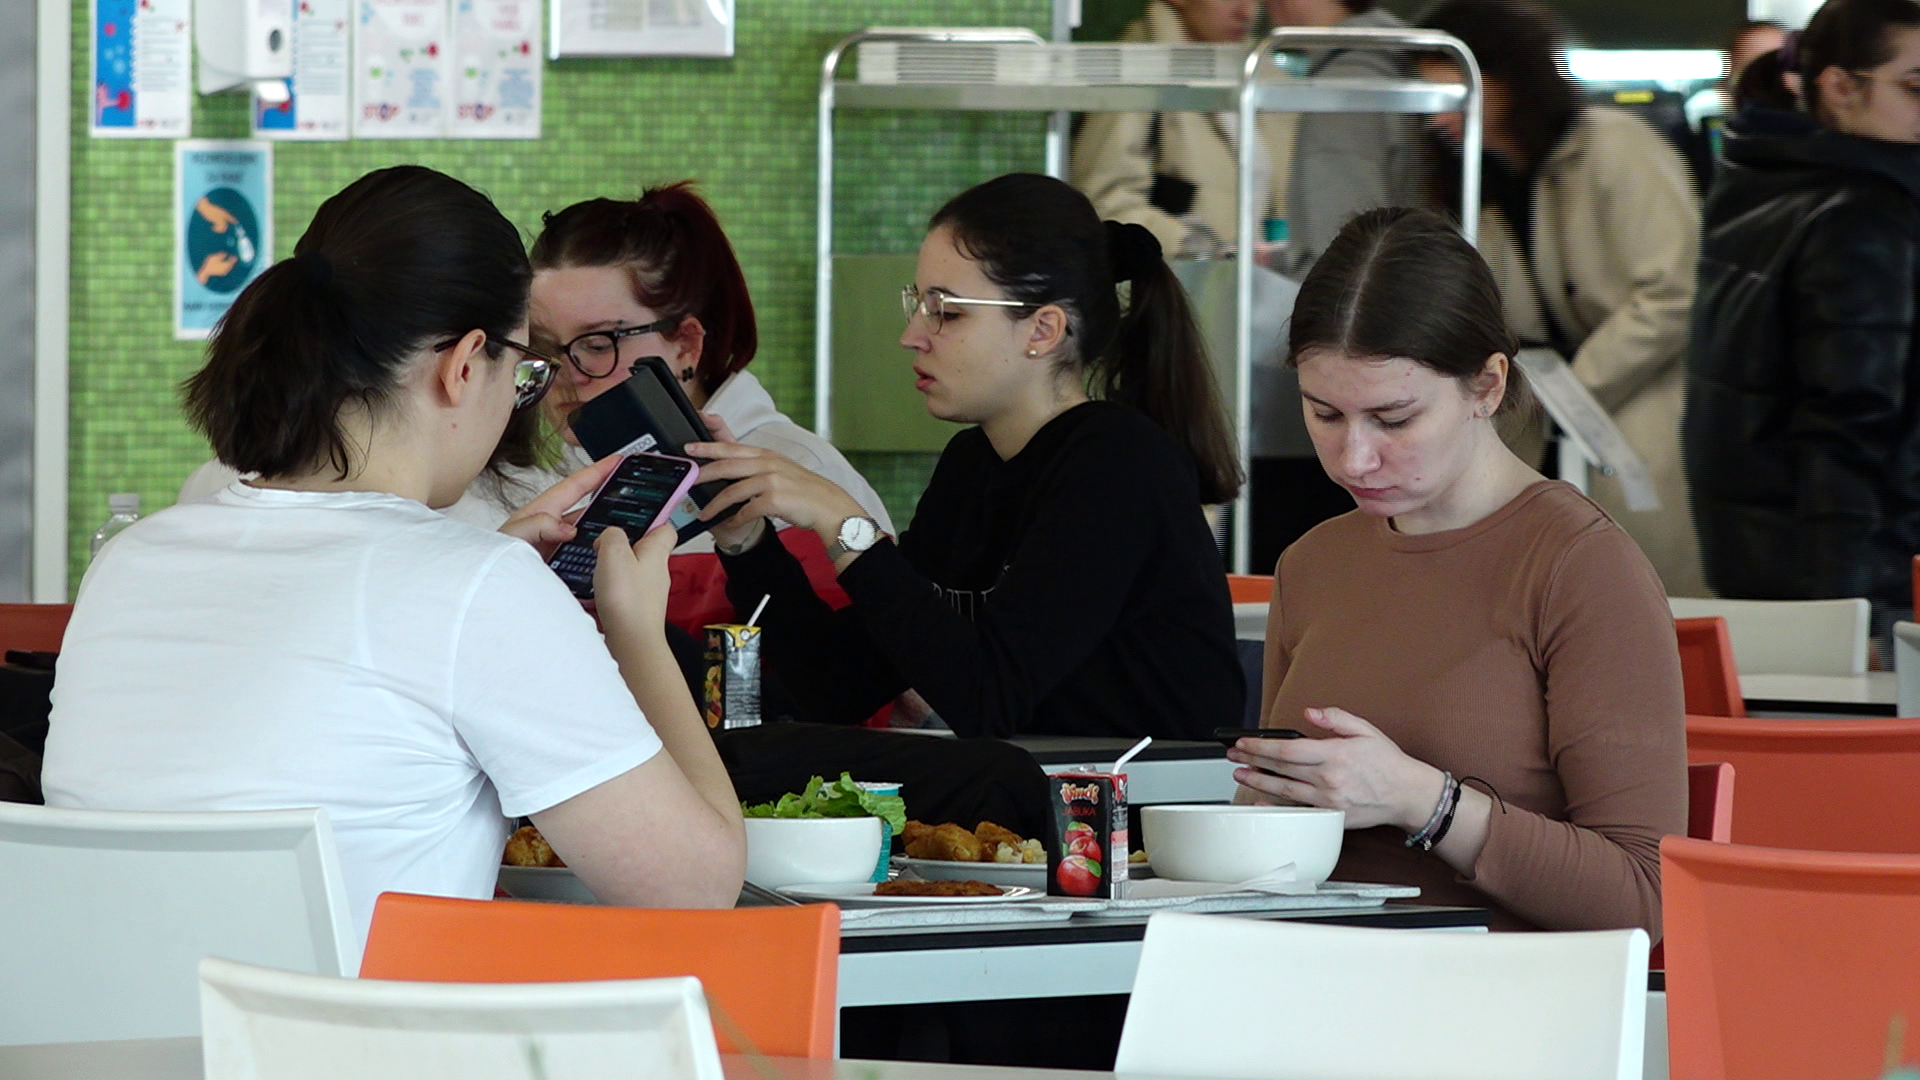 Ručak za 0.86 eura: Riječki studenti obroke plaćaju manje nego saborski zastupnici